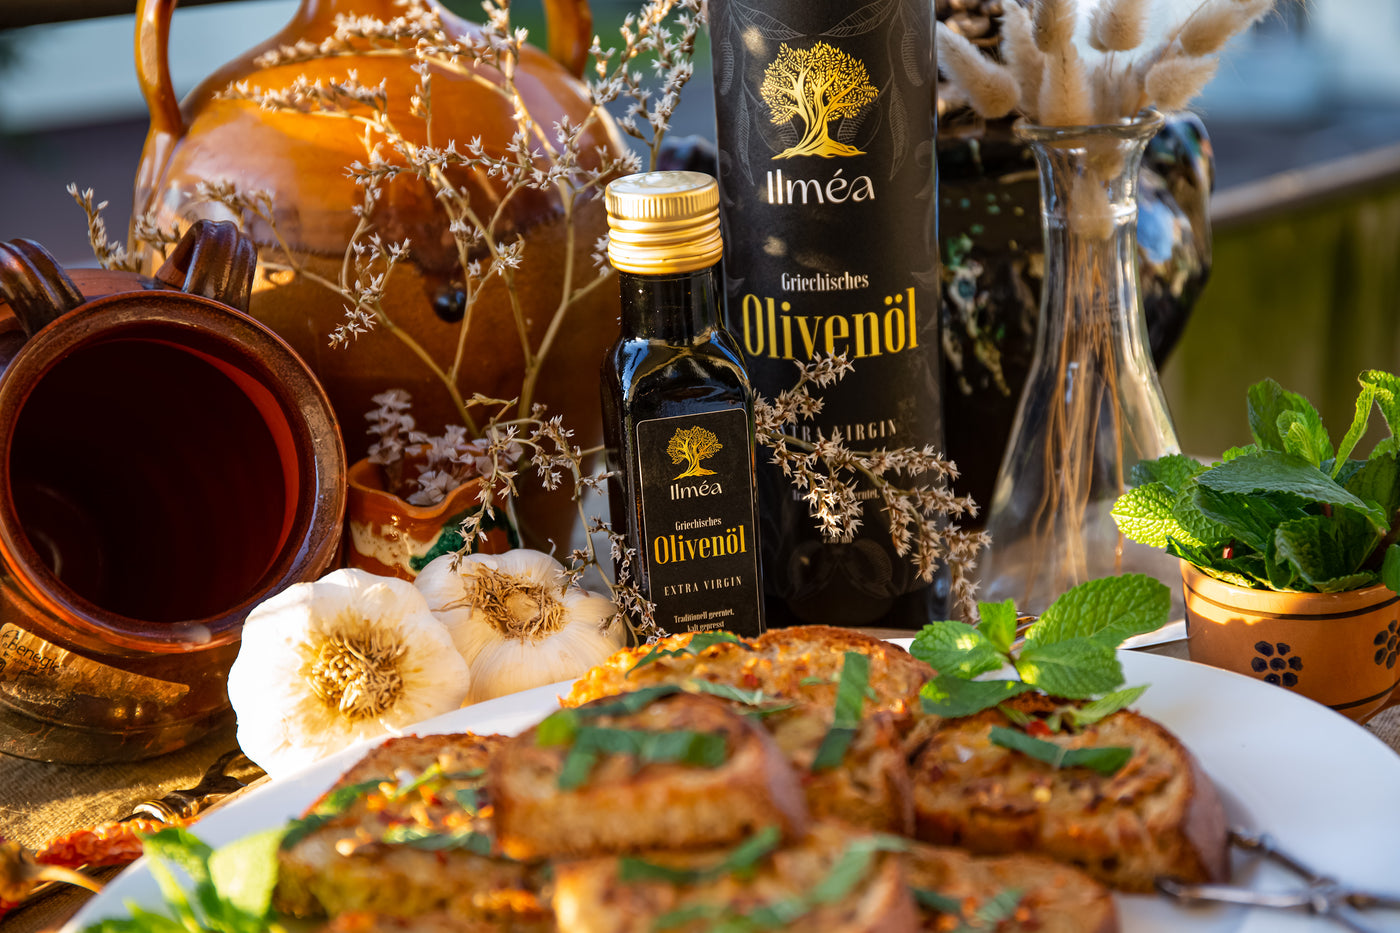 Ilmea Olivenöl Flasche 100ml mit Knoblauchbrot neben einer Grossen 750ml Olivenöl-Flasche